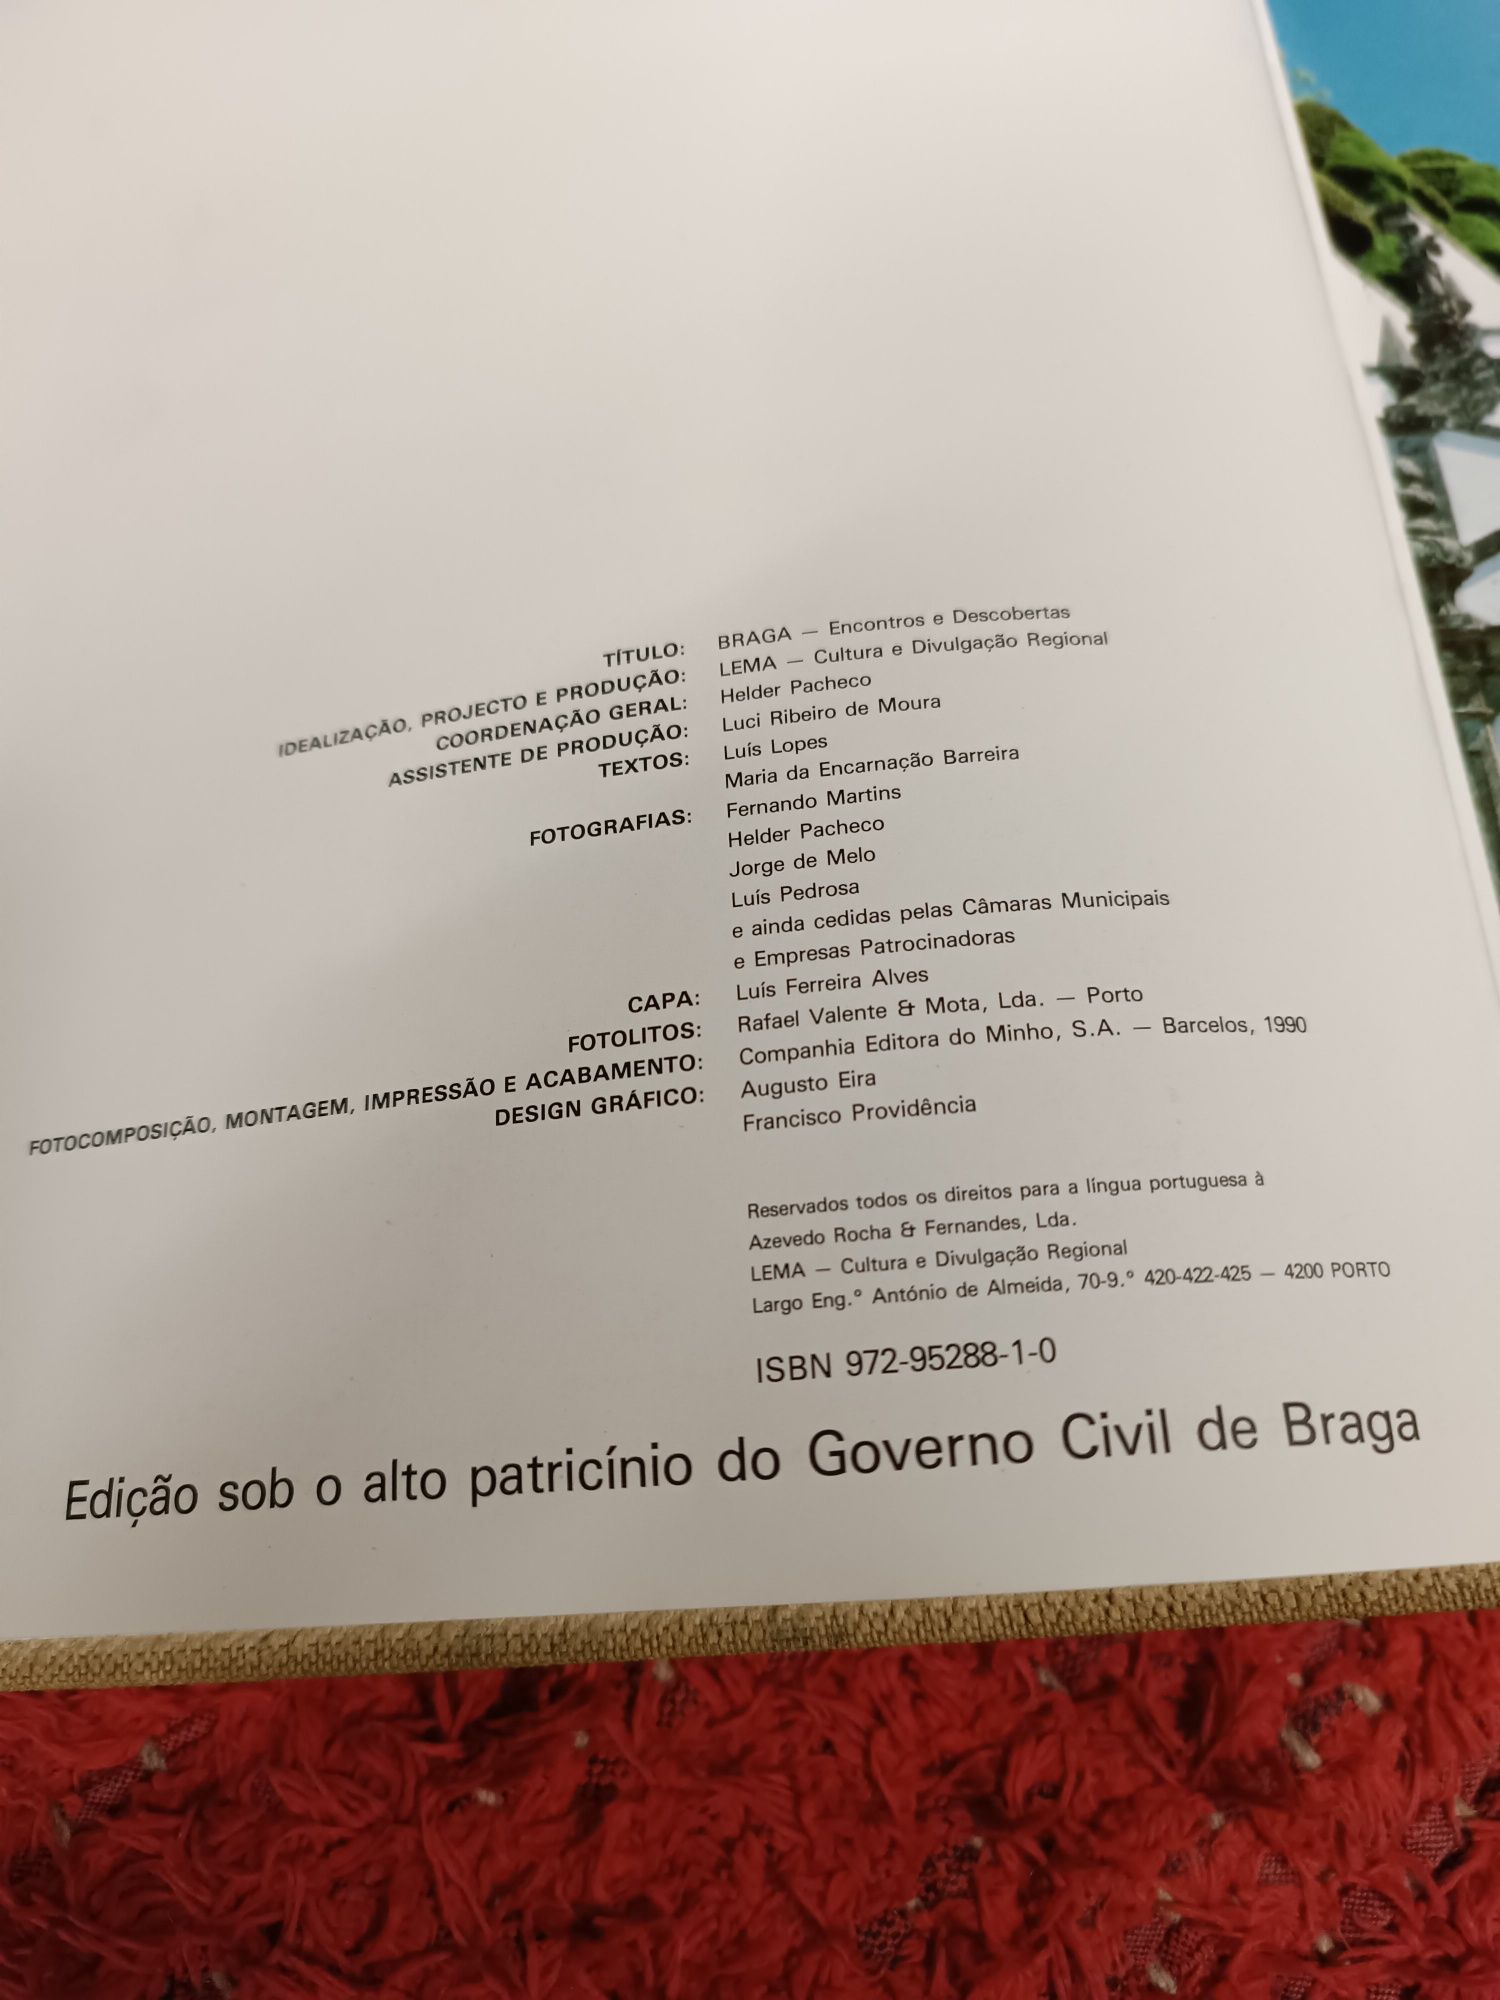 Braga Encontros e Descobertas livro